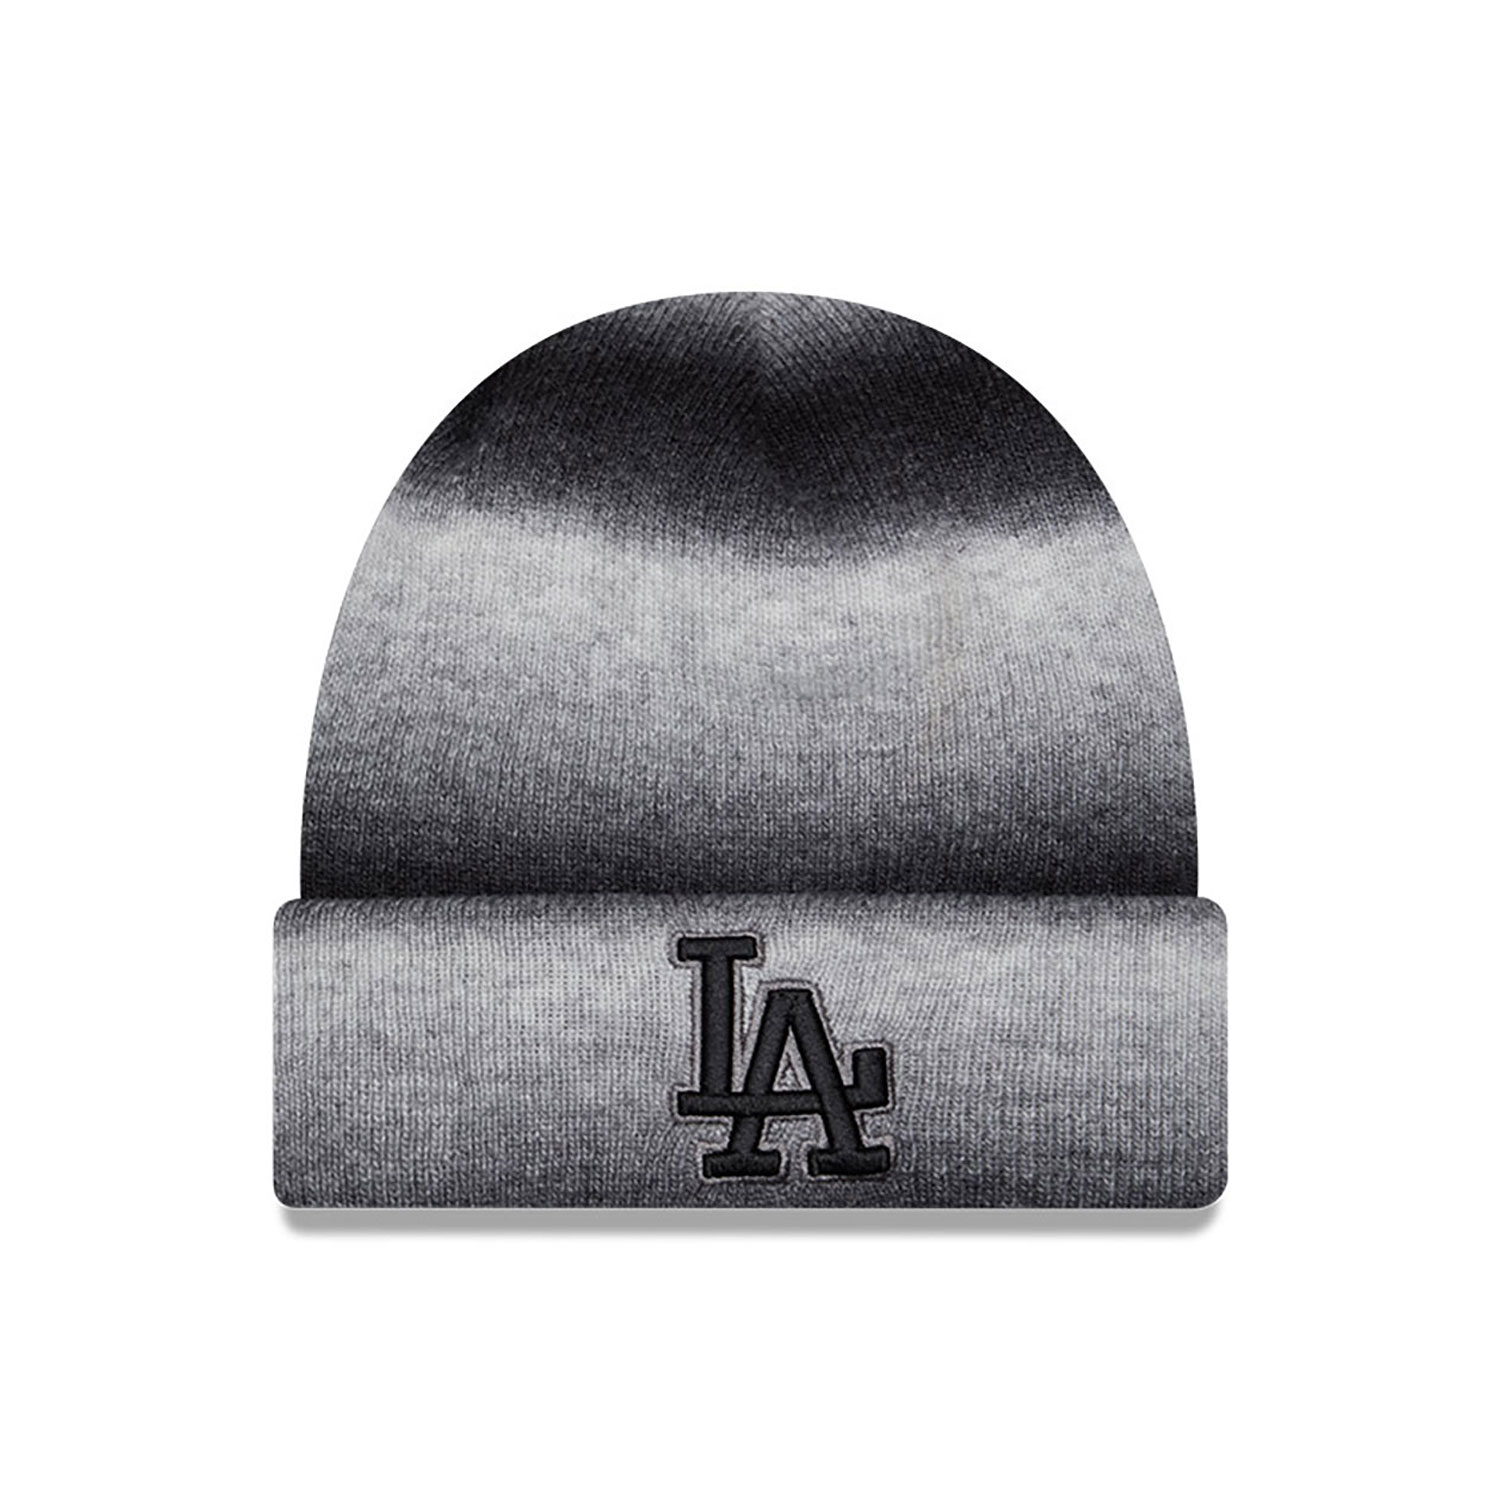 LA Dodgers Space Dye Black Cuff Knit Beanie Hat